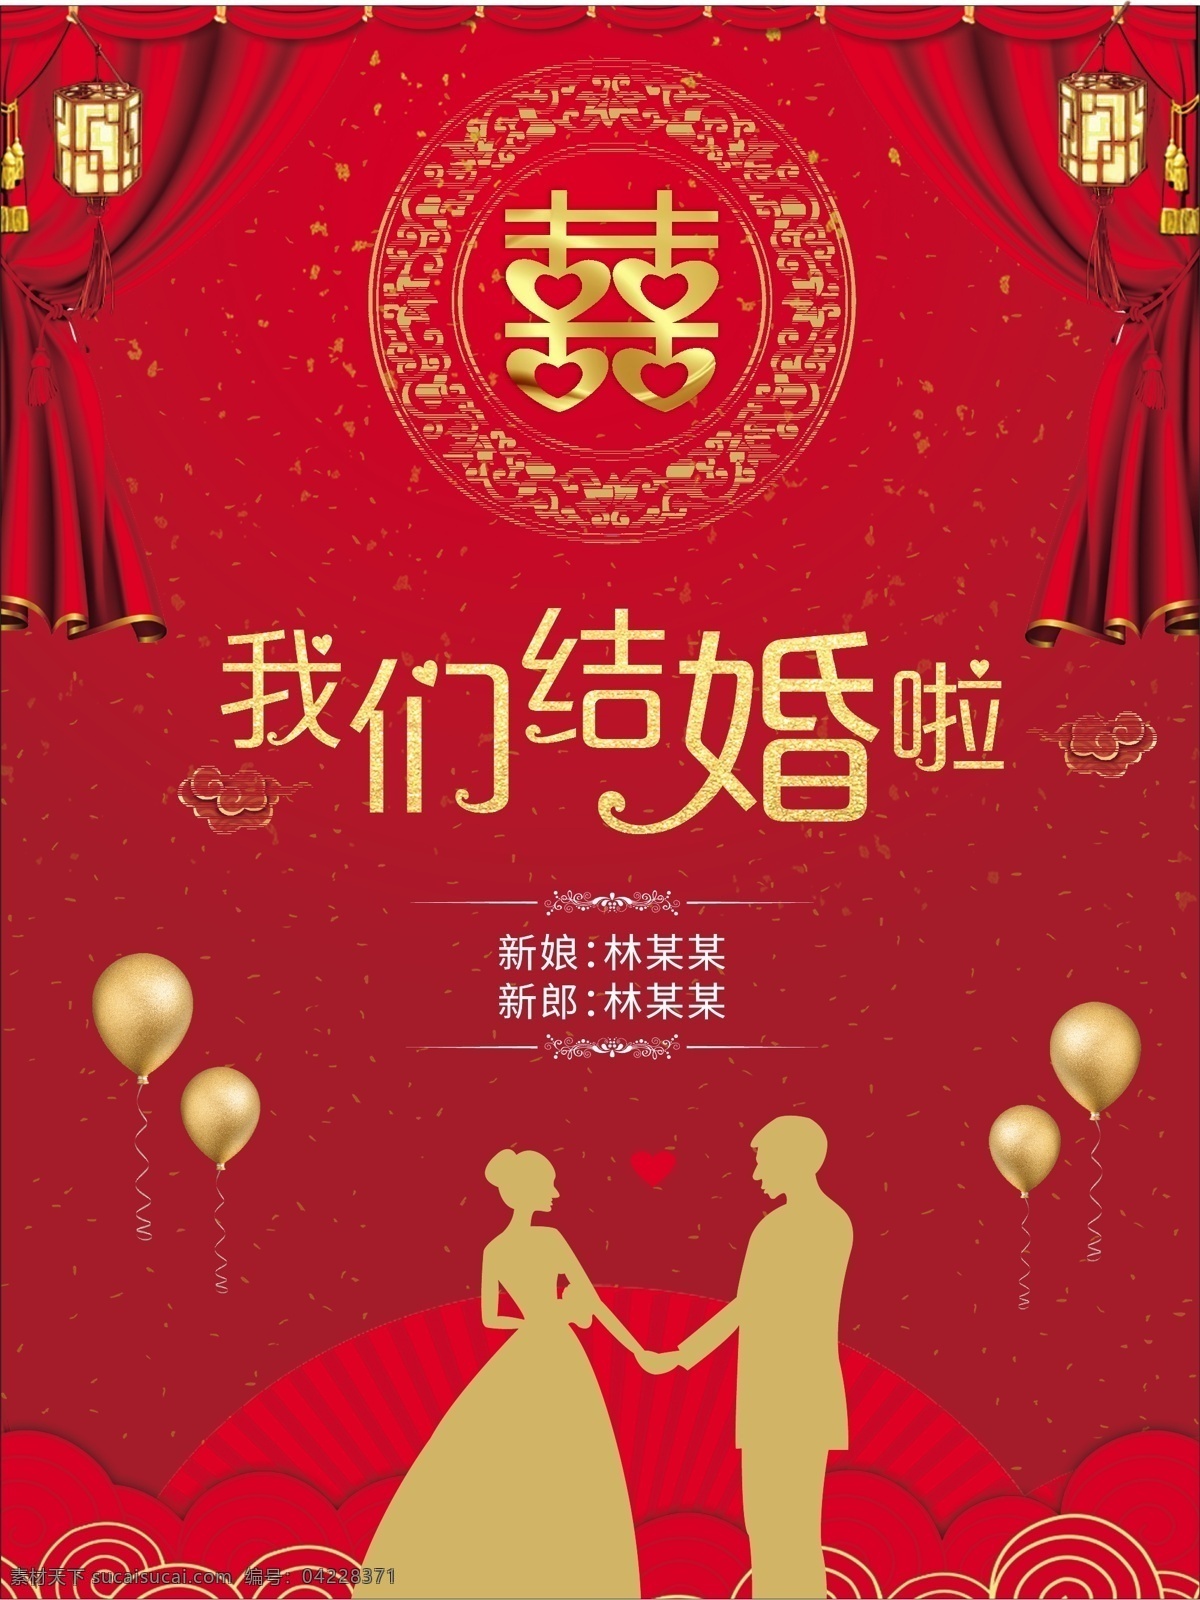 红色 简约 中国 风 婚庆公司 婚礼 结婚 海报 中国风海报 婚庆海报 婚礼海报 结婚海报 cdr海报 红色简约海报